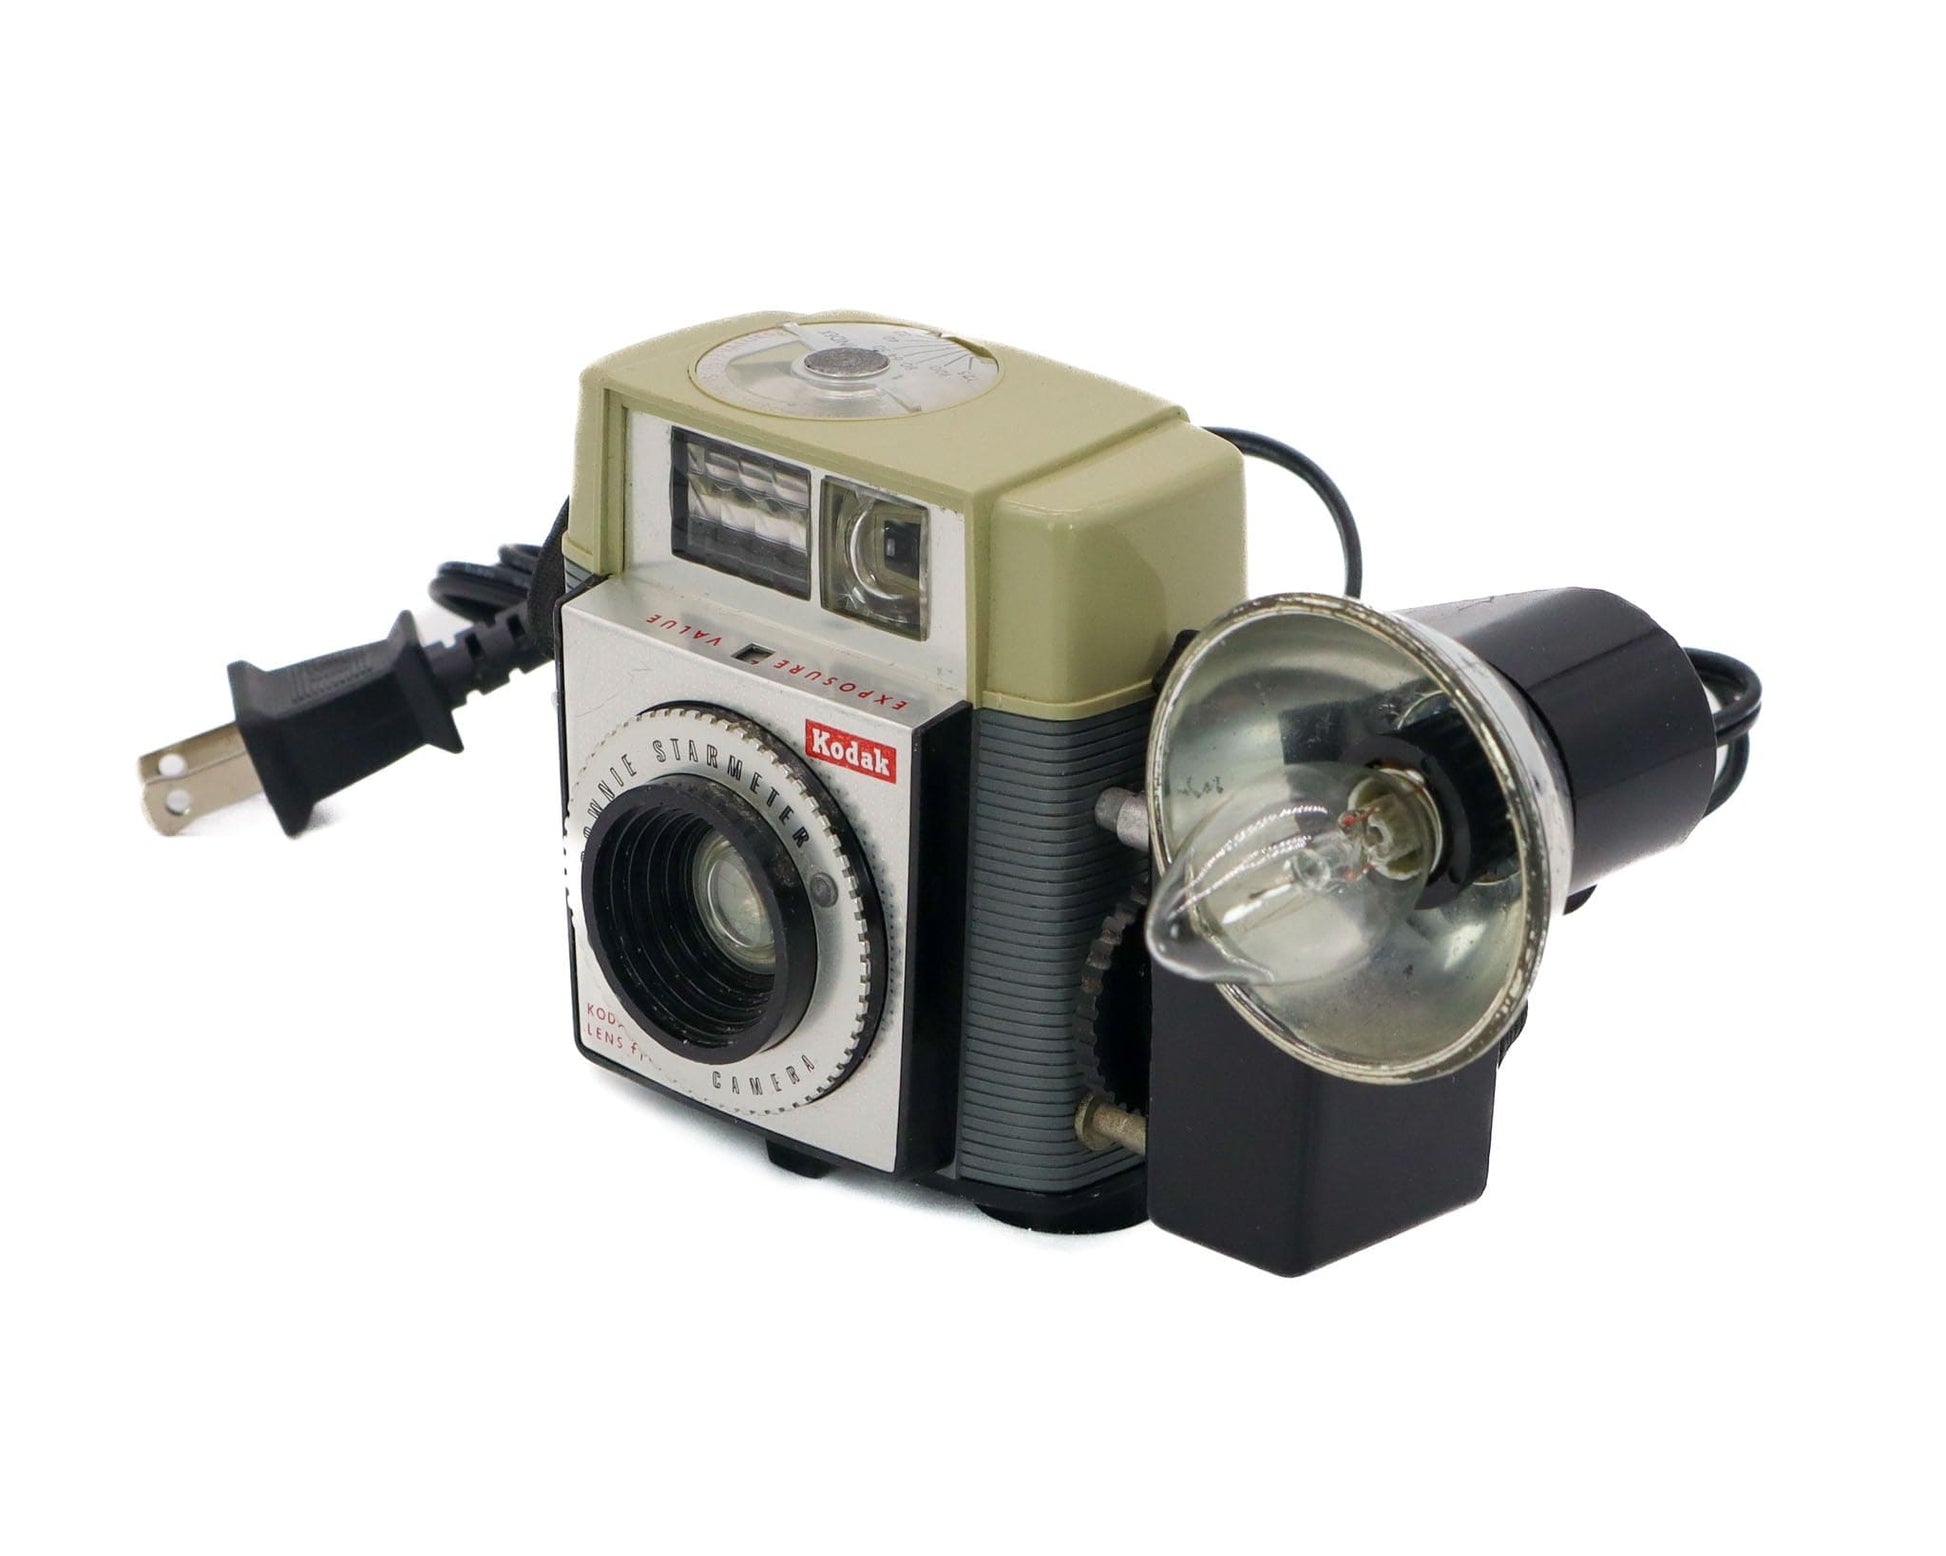 LightAndTimeArt Nightlight Original 1950's Kodak Brownie Starmeter Camera Upcycled Nightlight